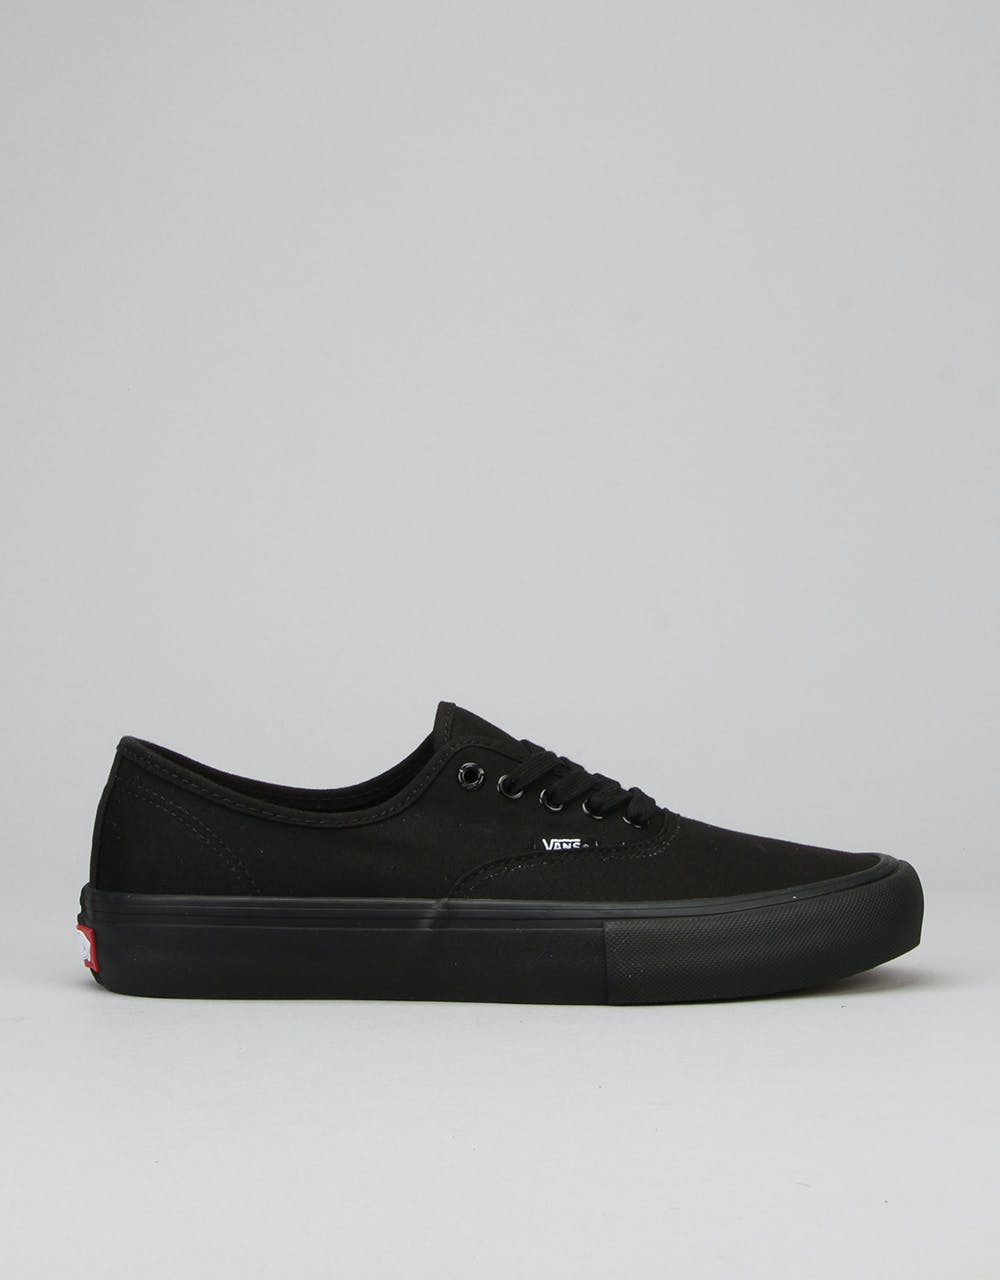 Vans Authentic Pro Skate Shoes - Black/Black